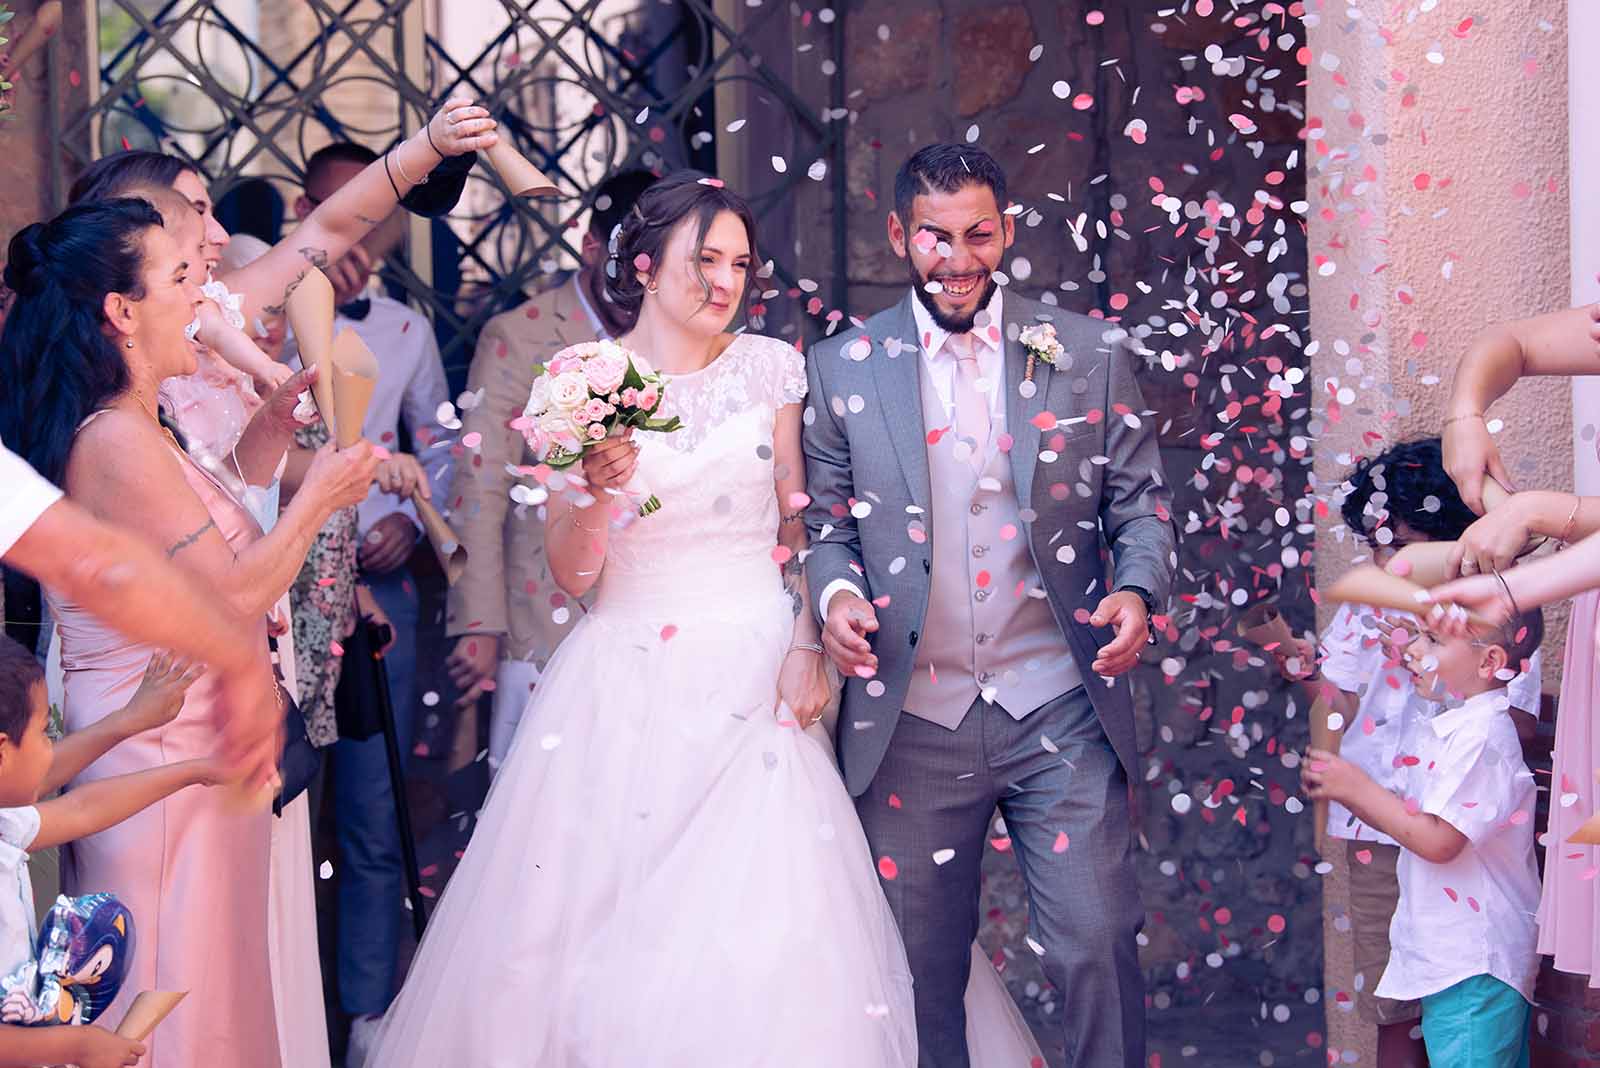 deux jeunes mariés sortant de la mairie sous une pluie de confettis